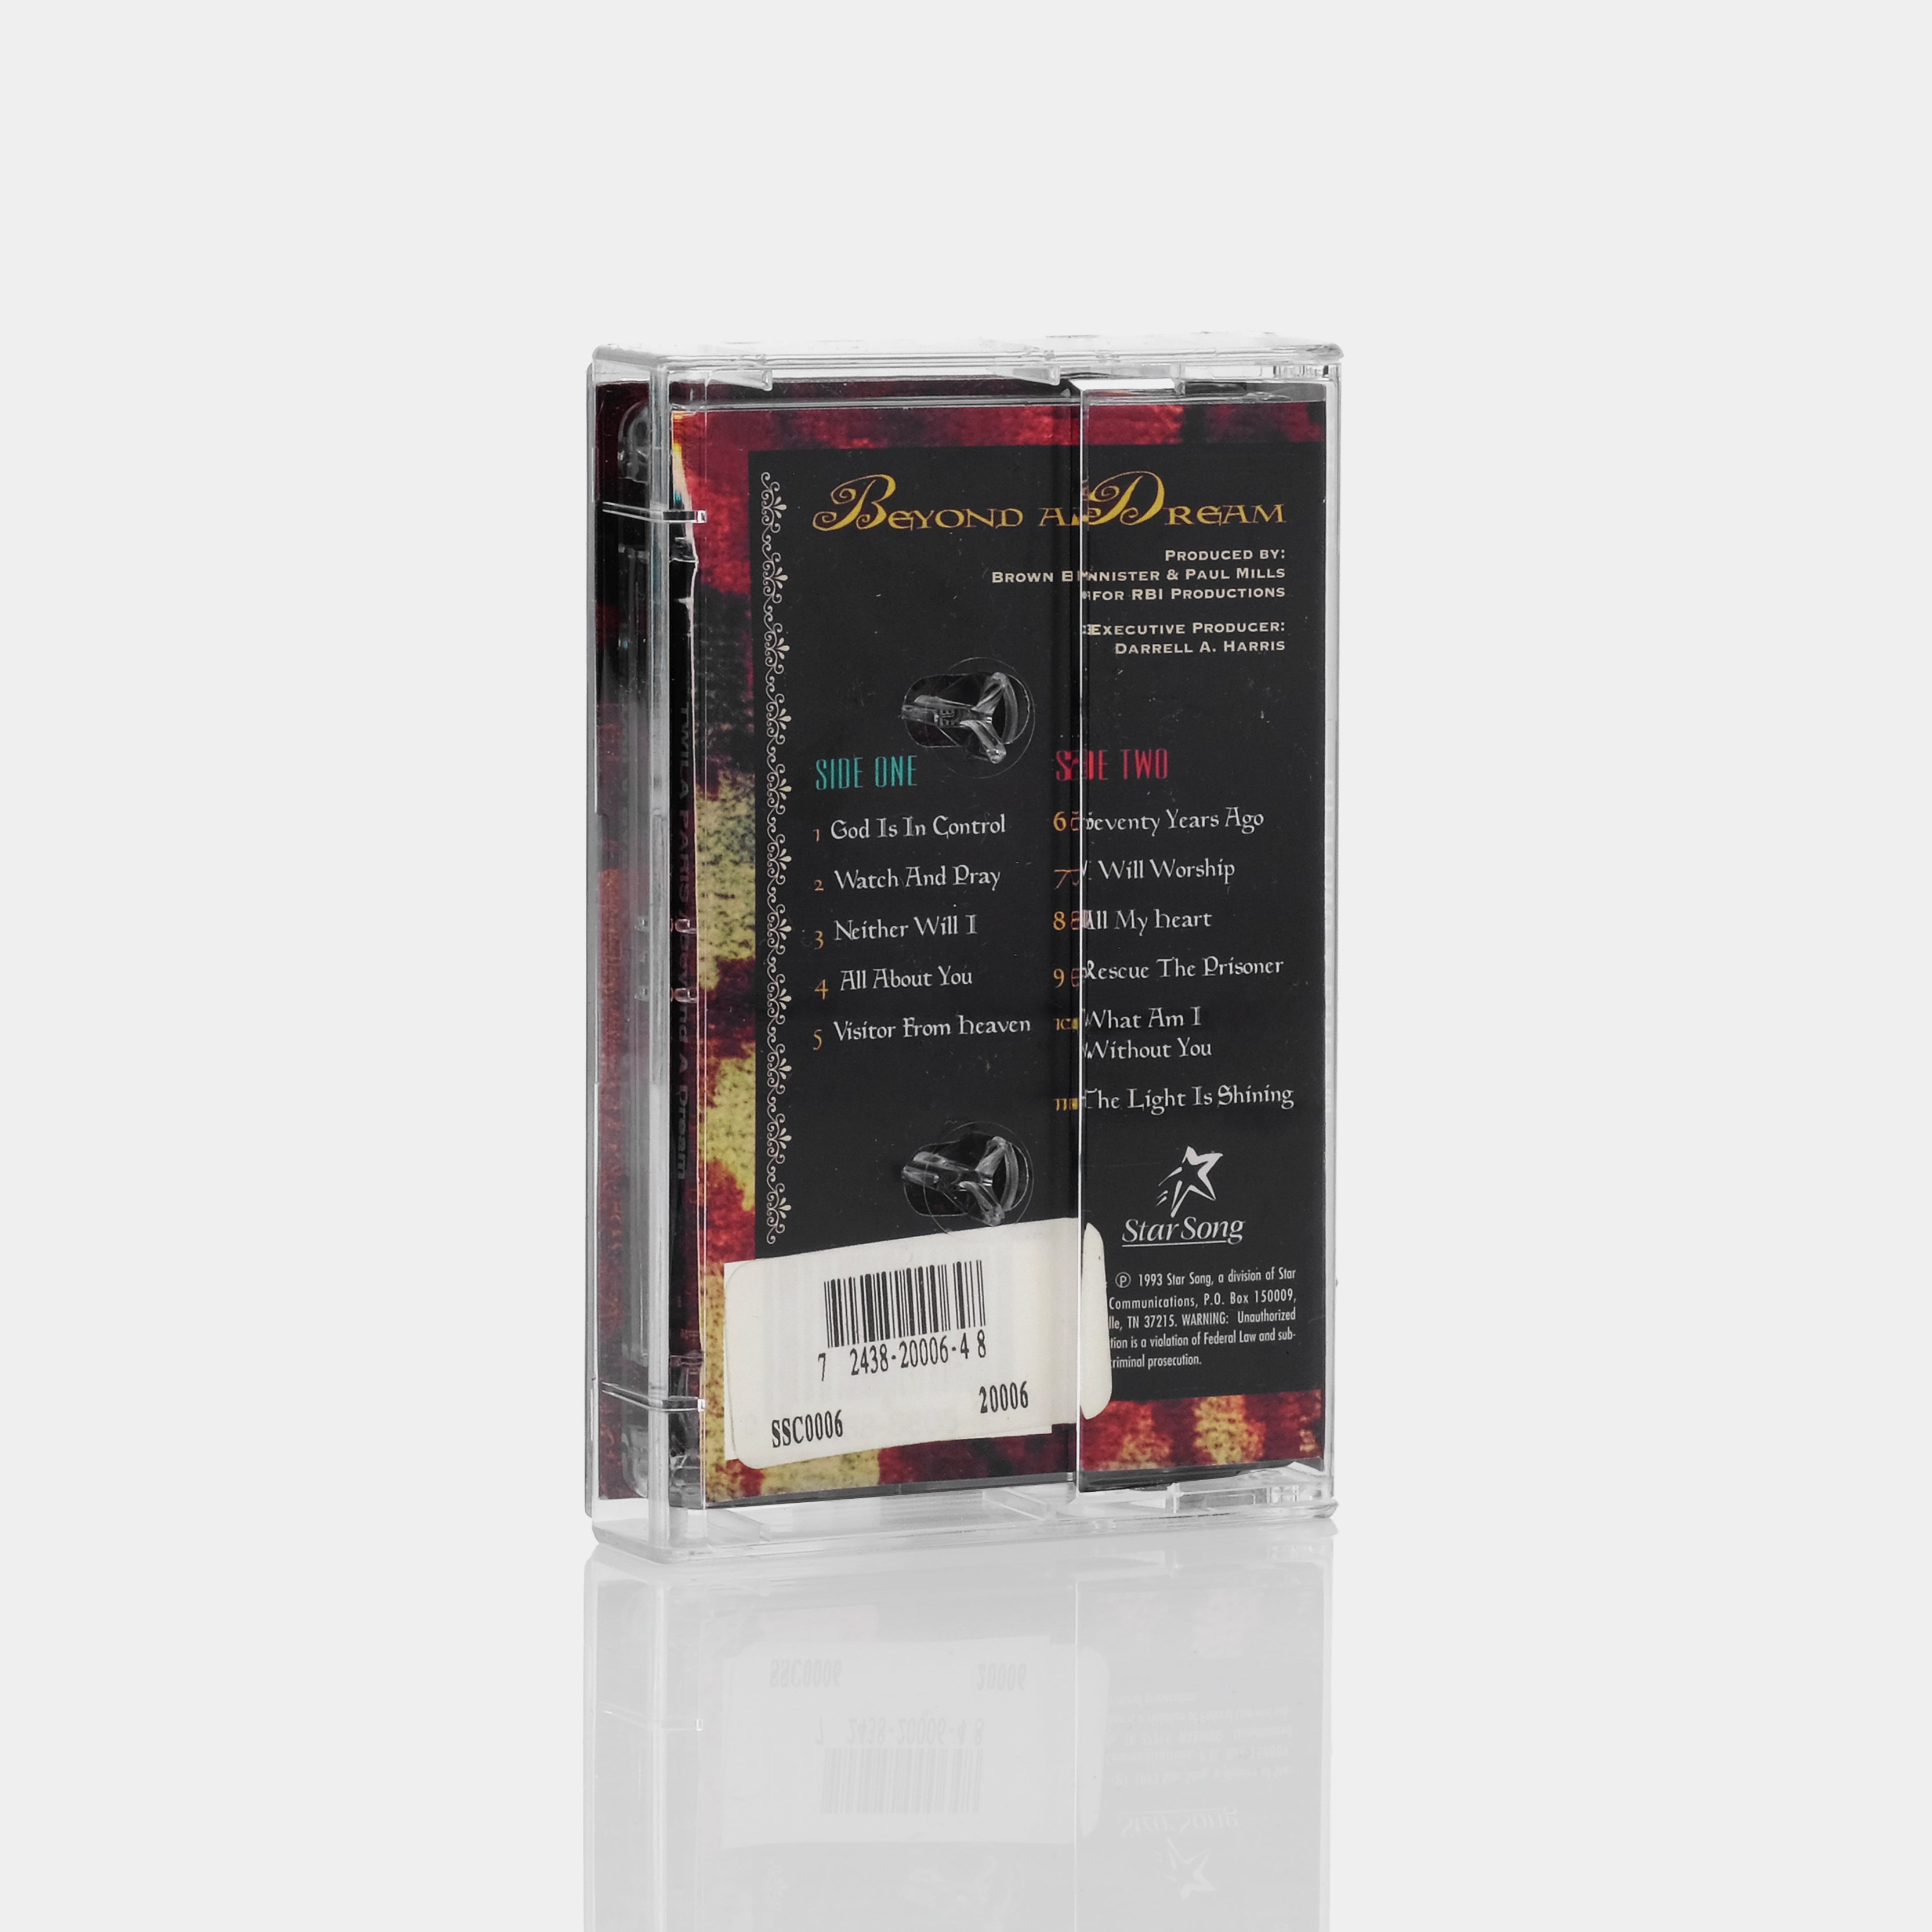 Twila Paris - Beyond A Dream Cassette Tape